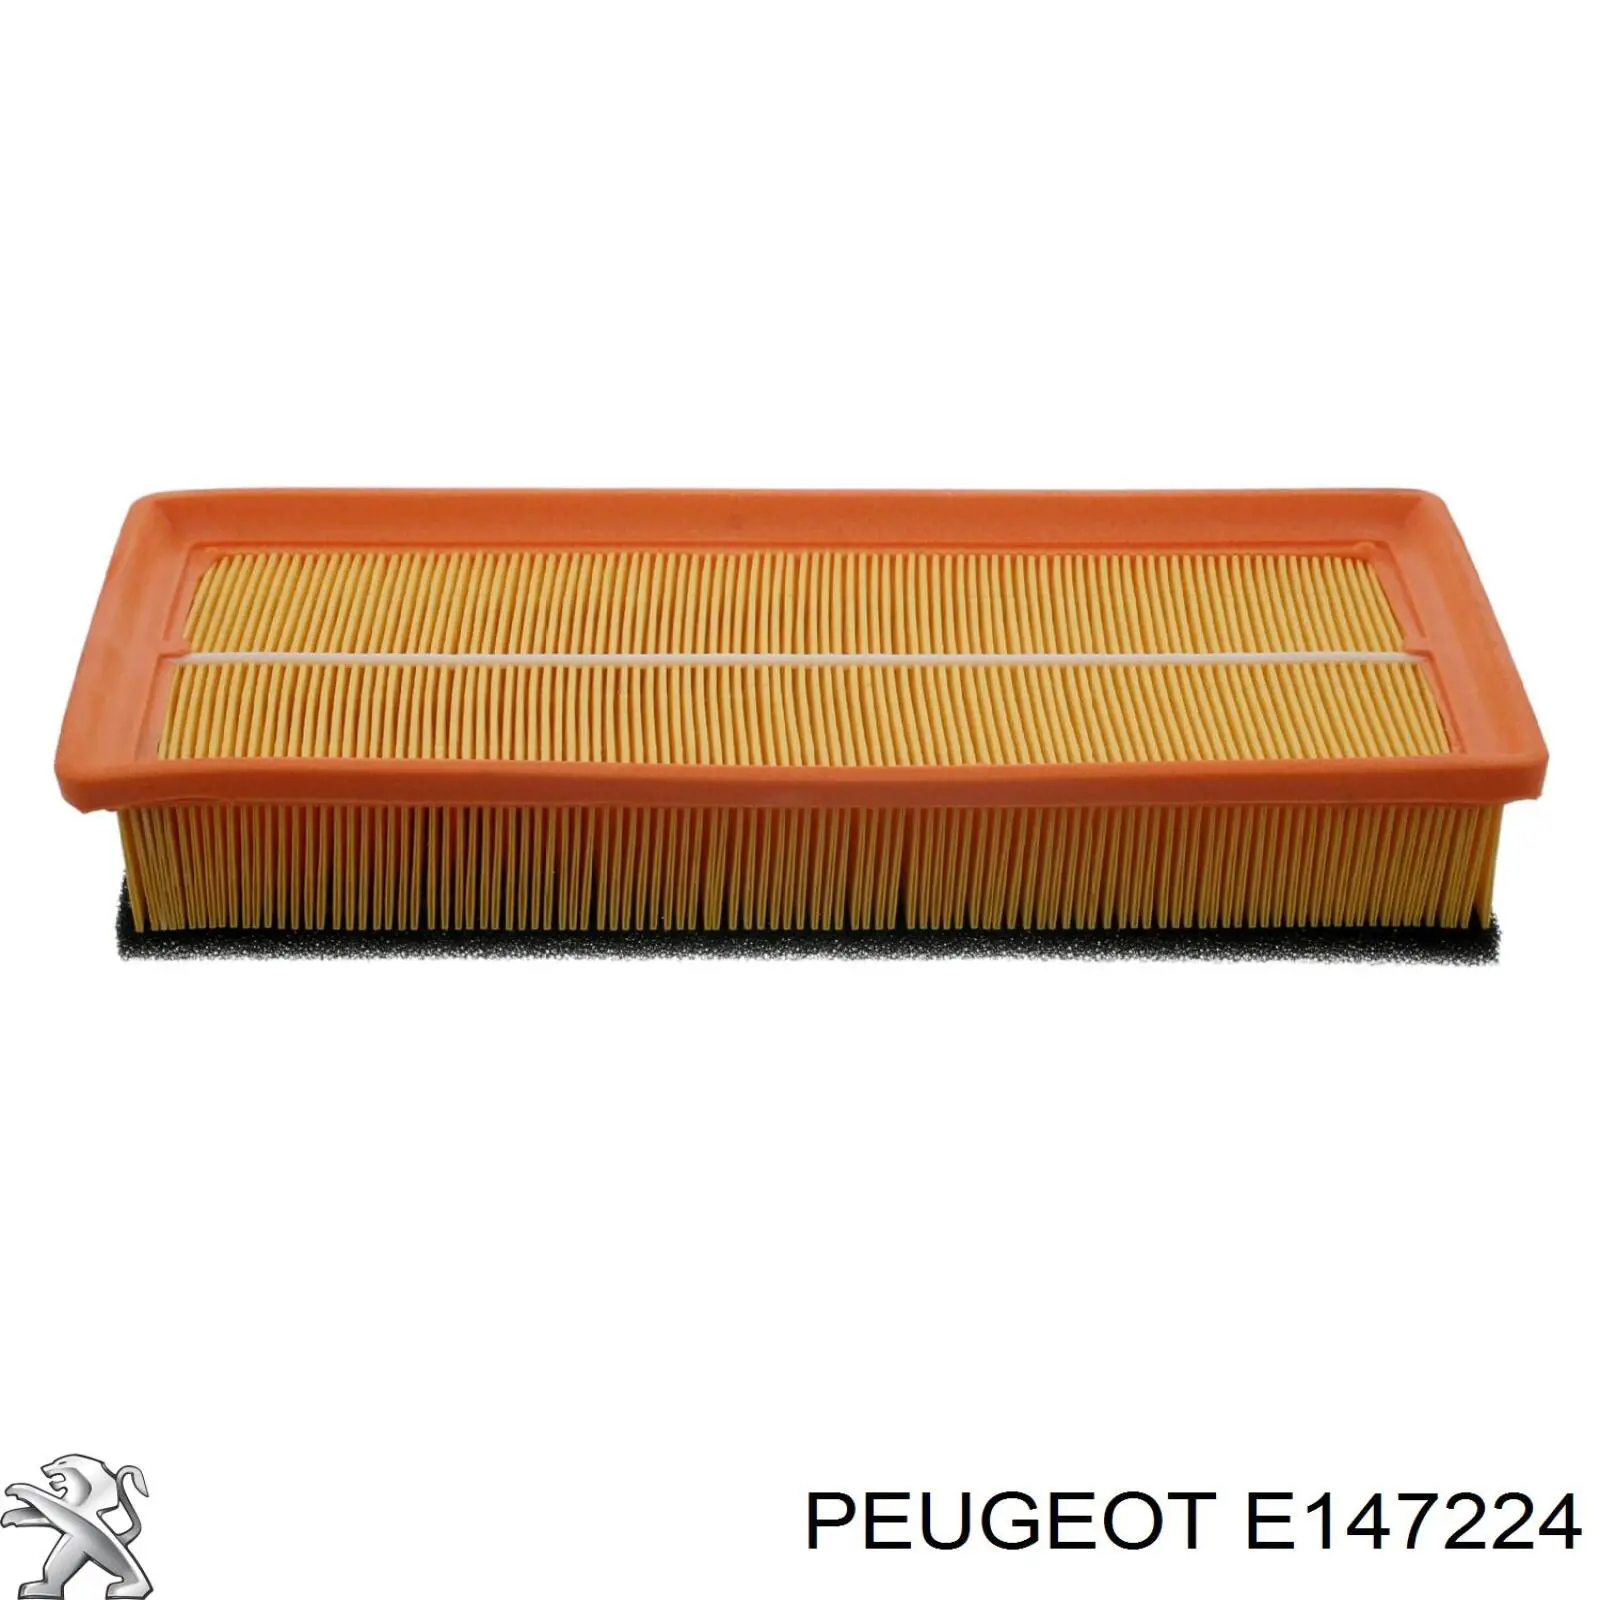 E147224 Peugeot/Citroen filtro de aire